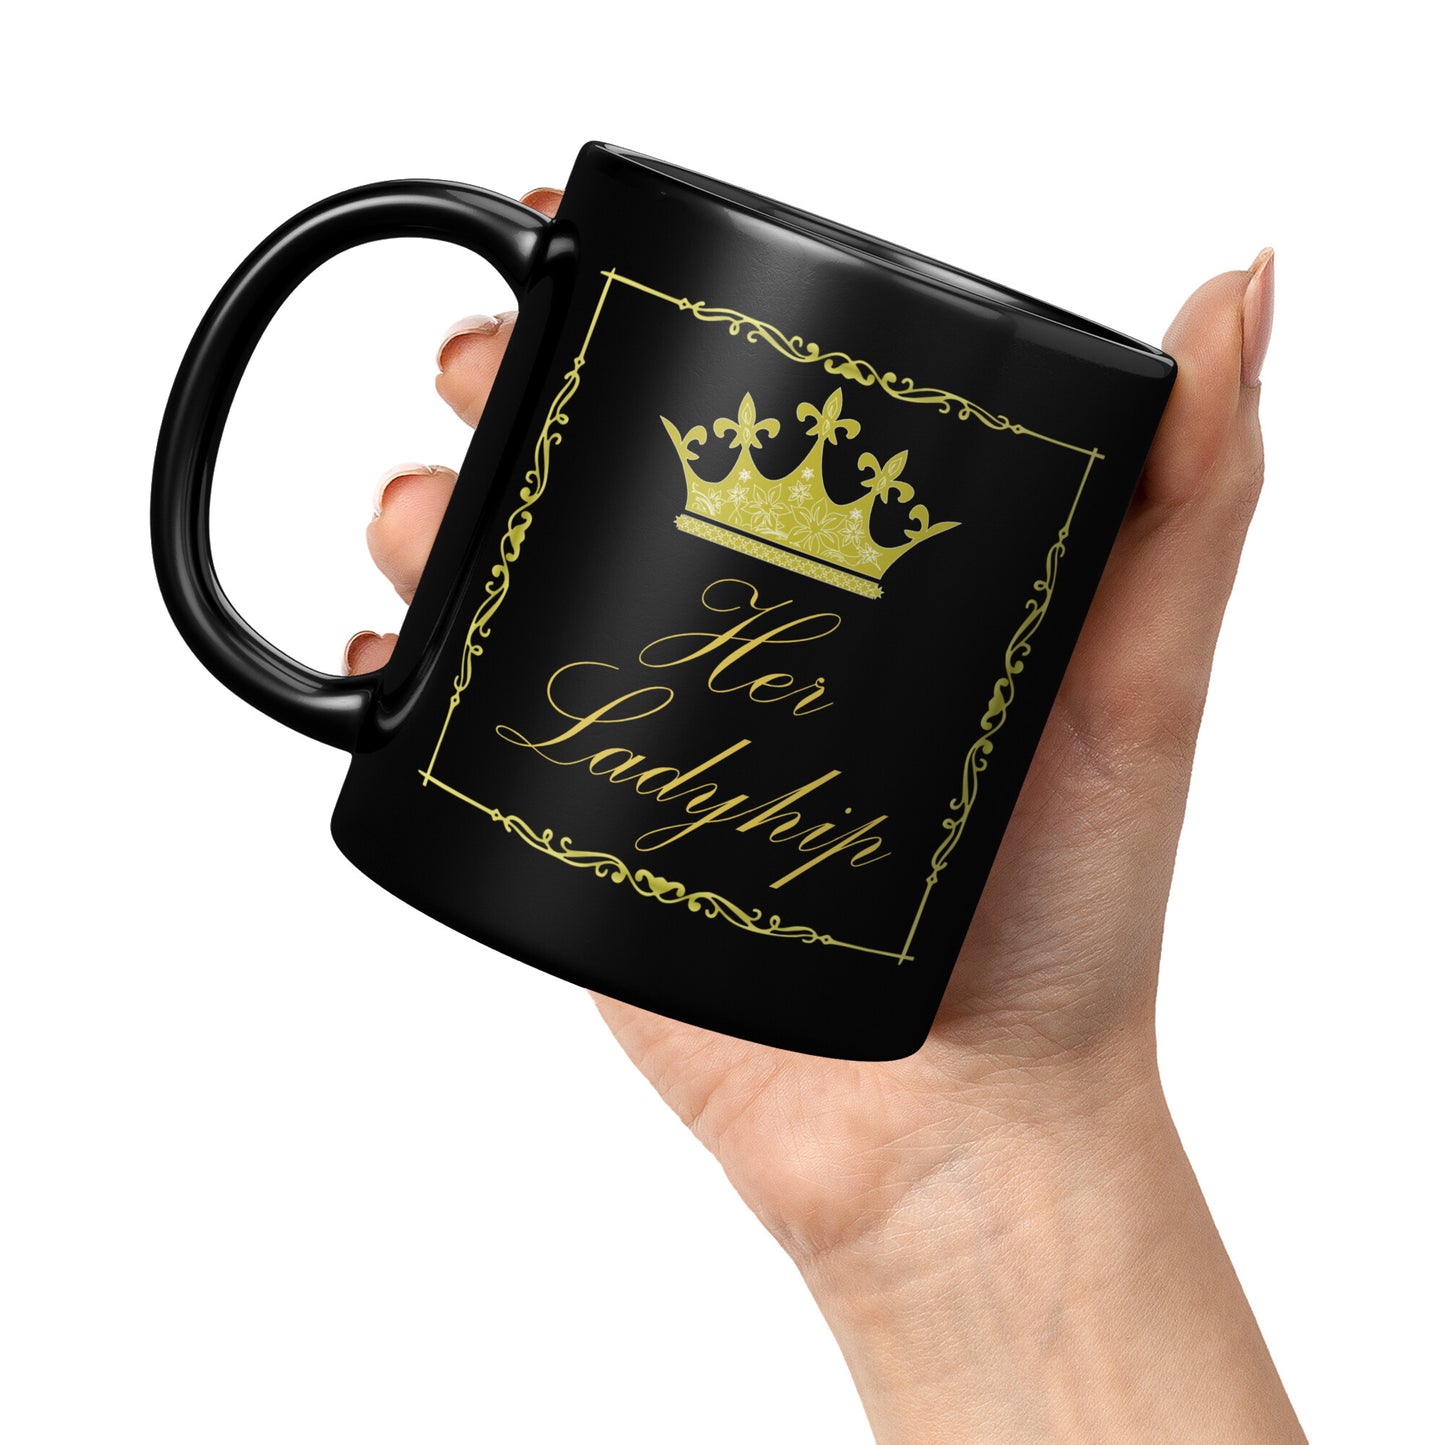 Ladyship mug